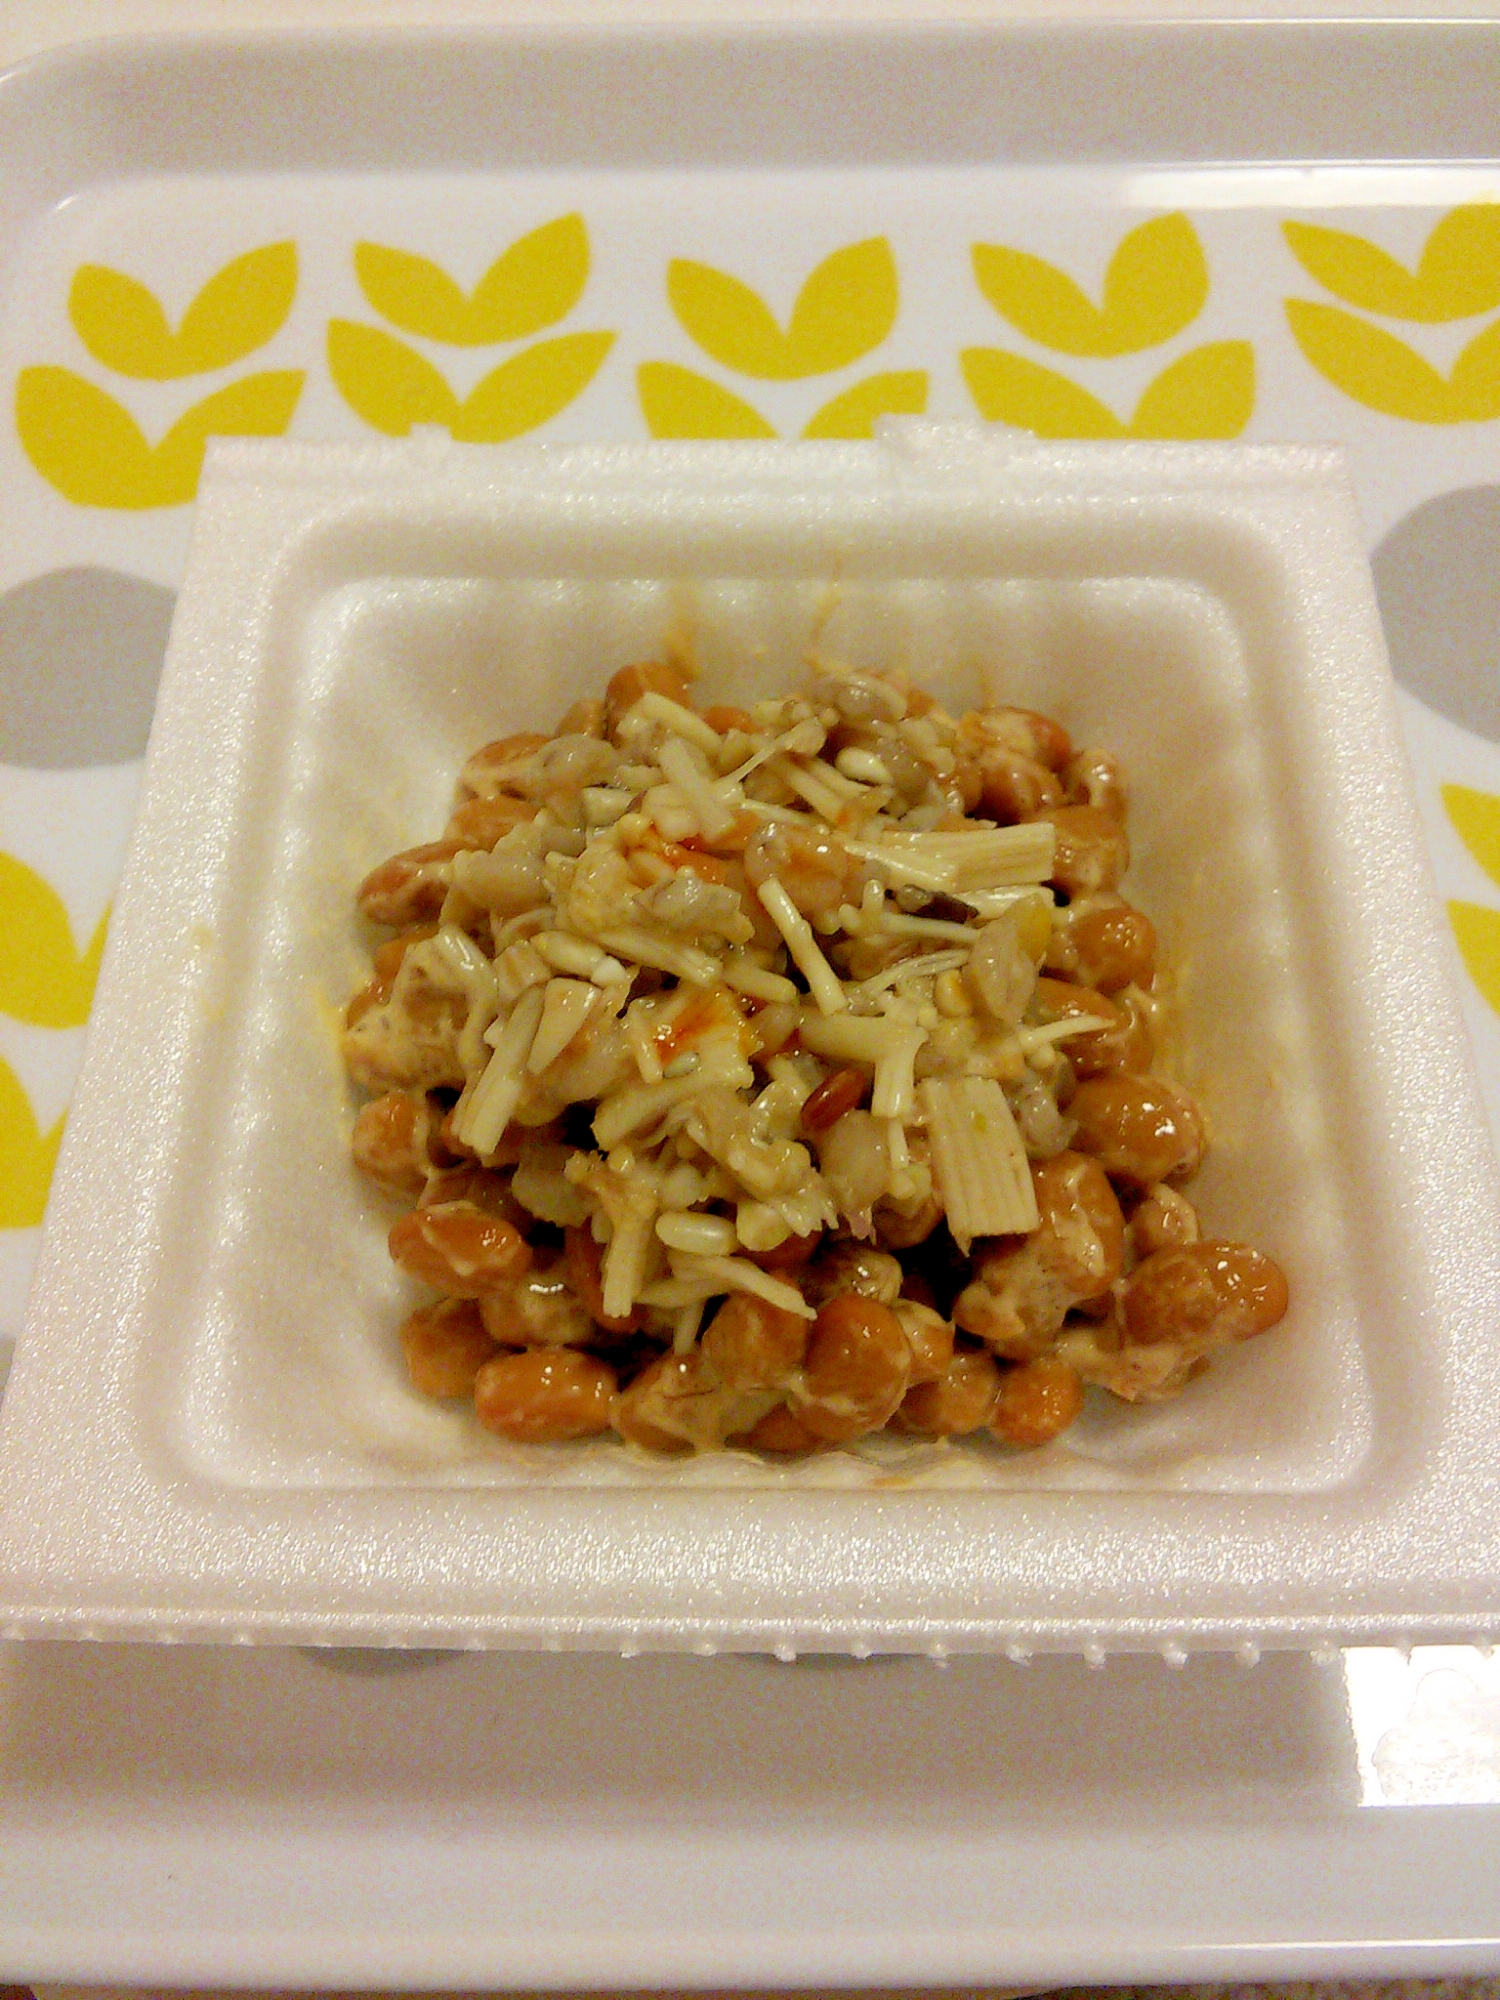 えのきとタマチャンショップの三十雑穀の中華風味納豆